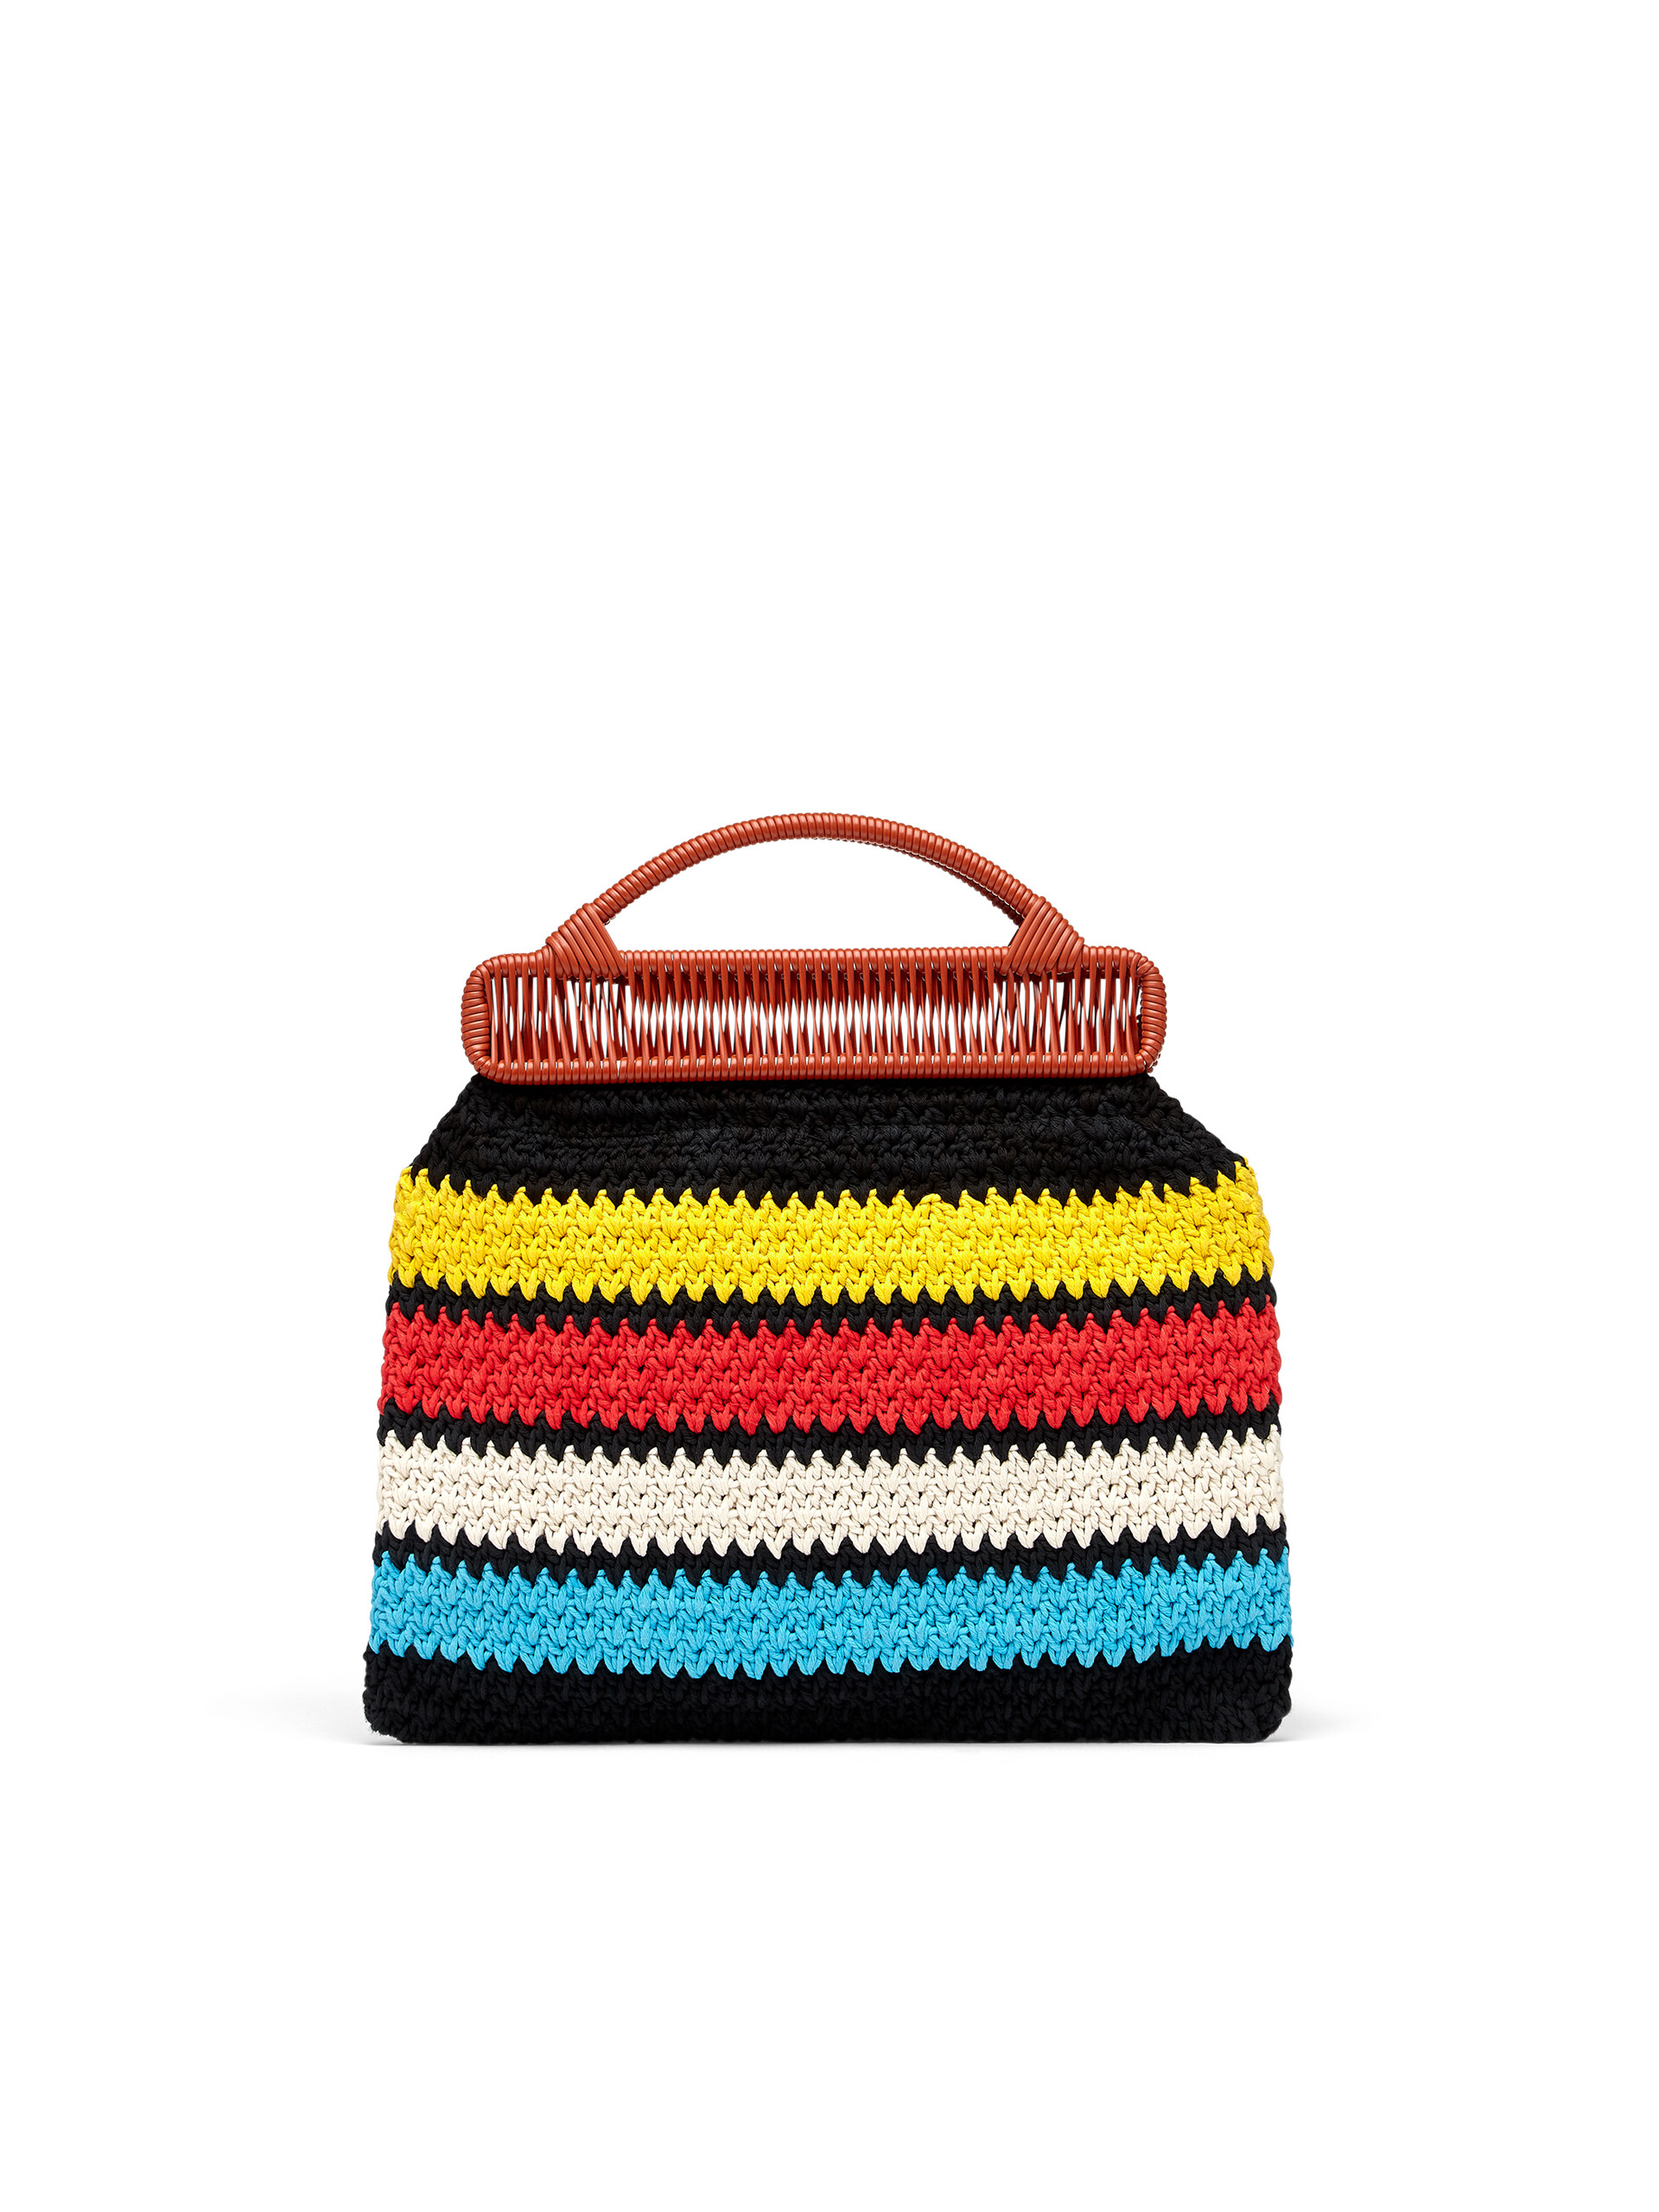 MARNI MARKET bag in multicolor crochet cotton - Furniture - Image 3